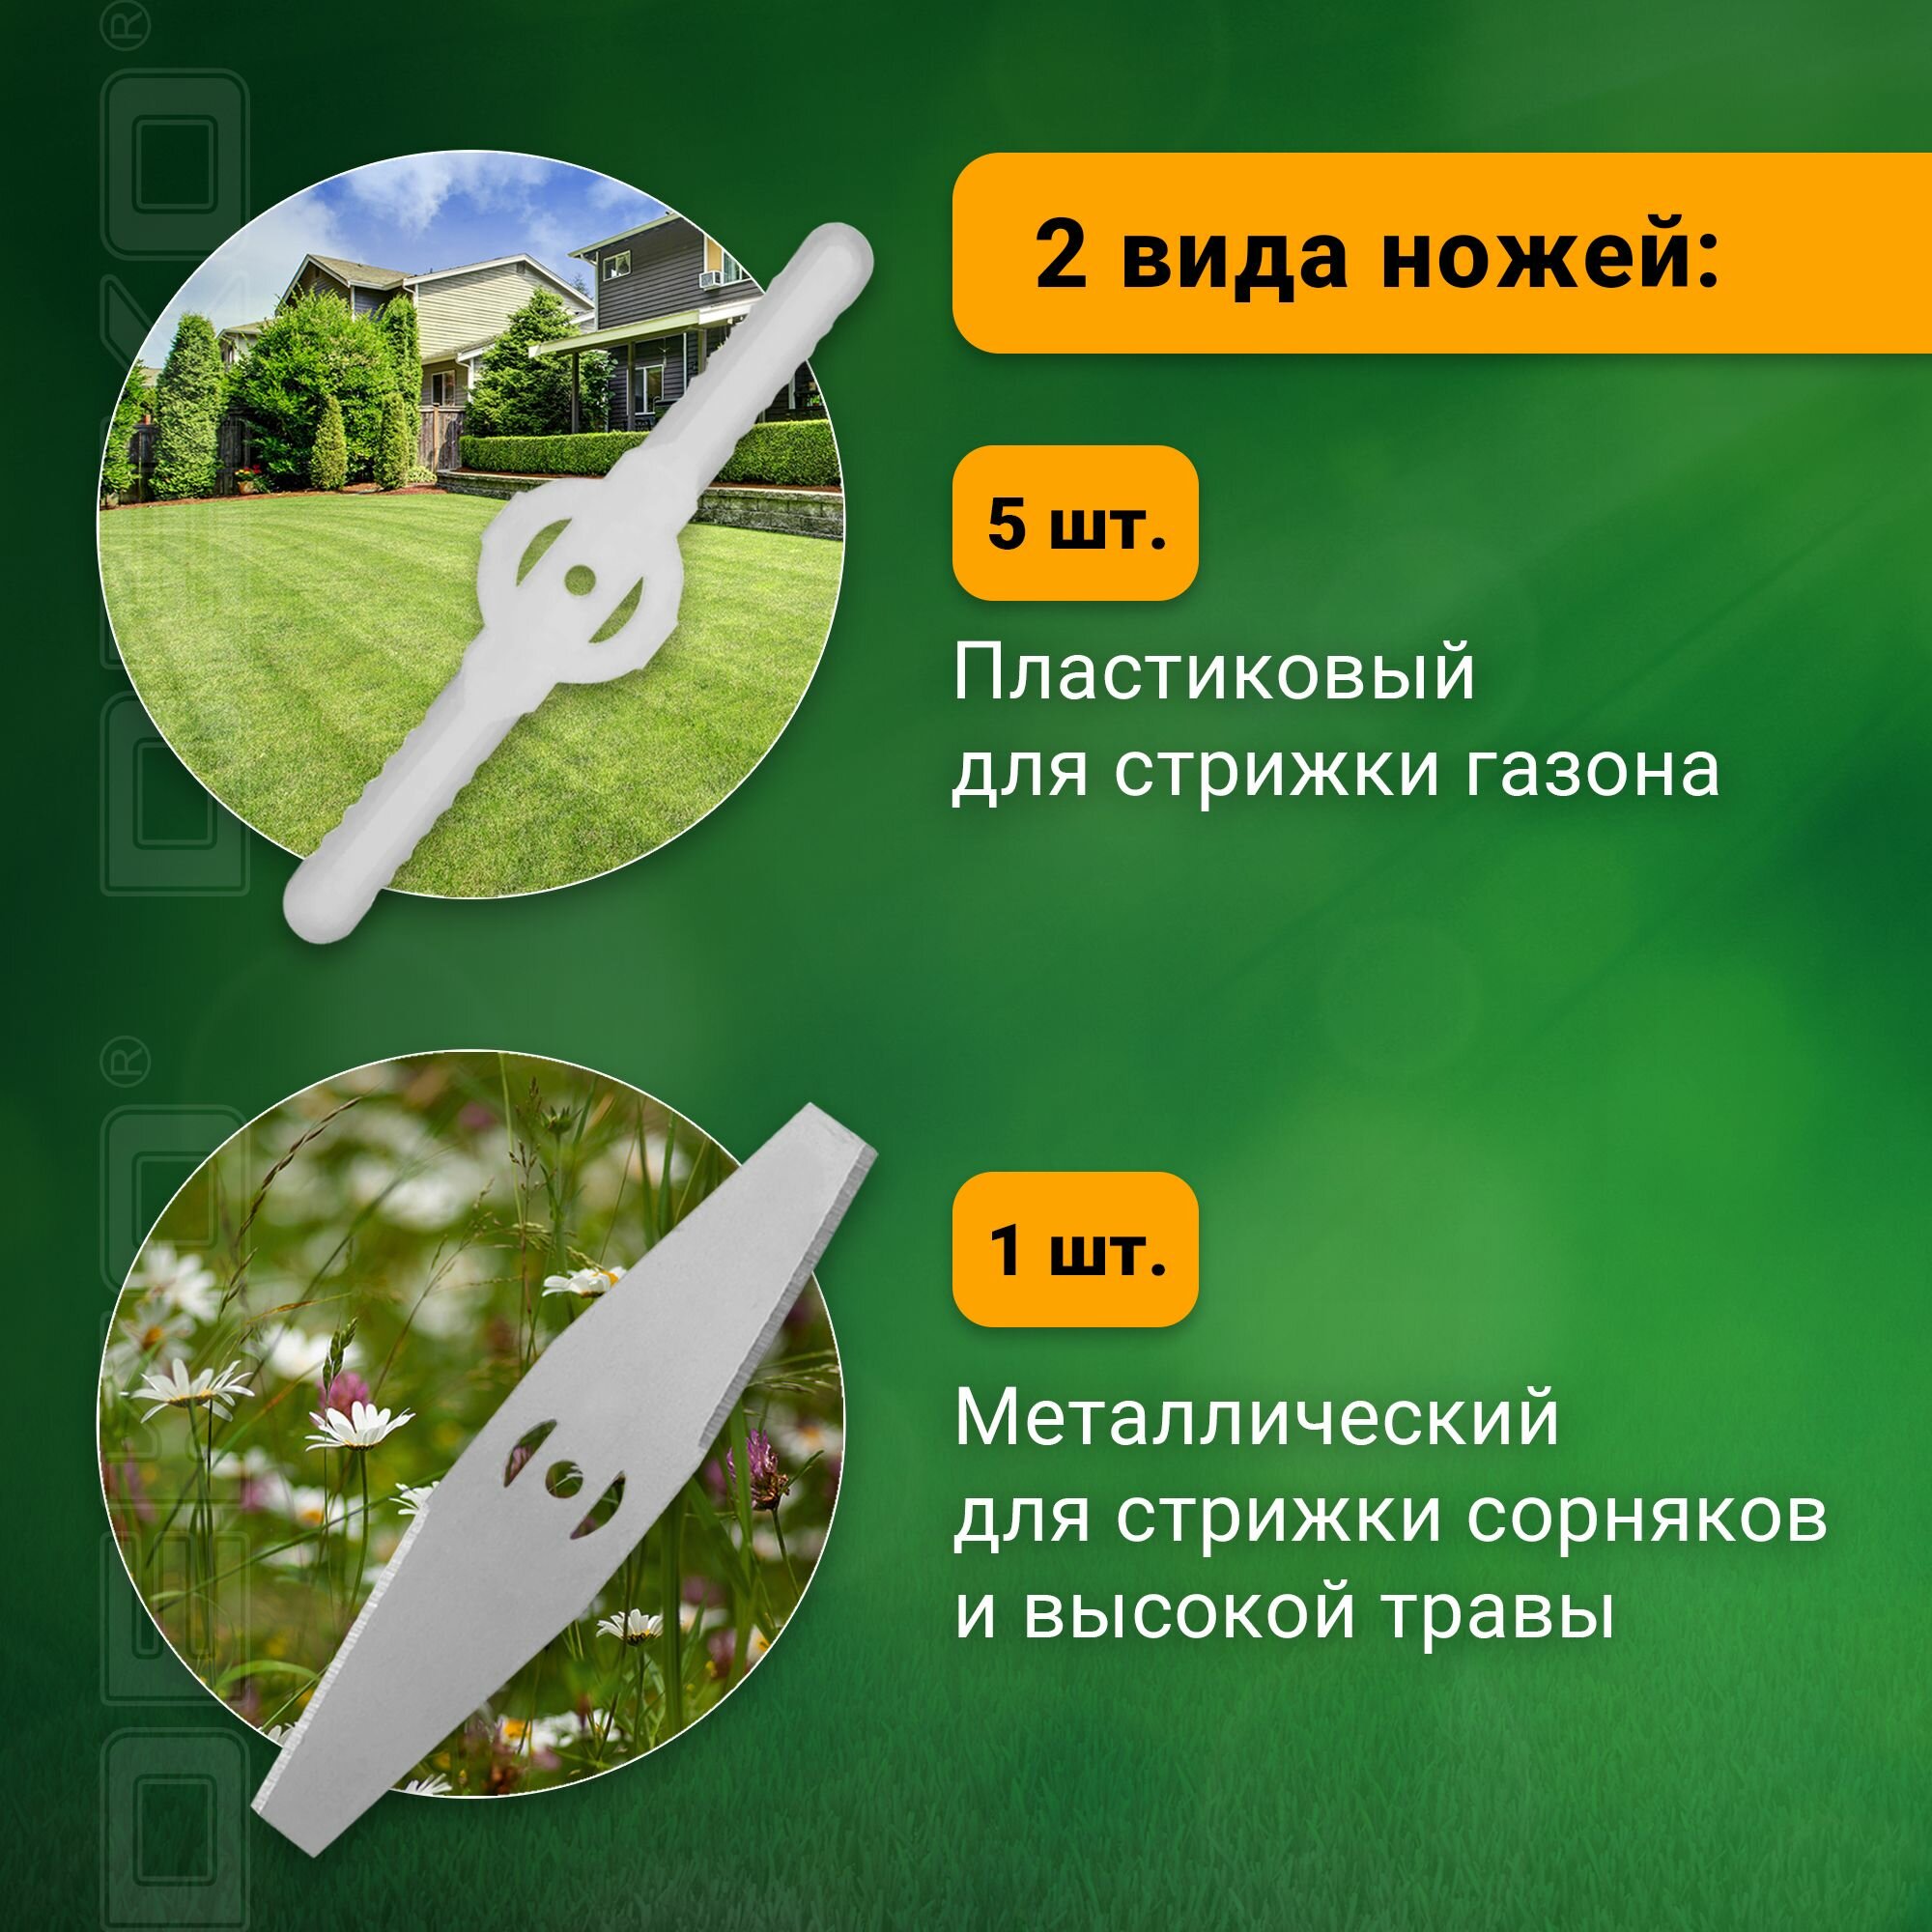 Триммер садовый аккумуляторный DEKO DKTR21, 2*2.0Ач